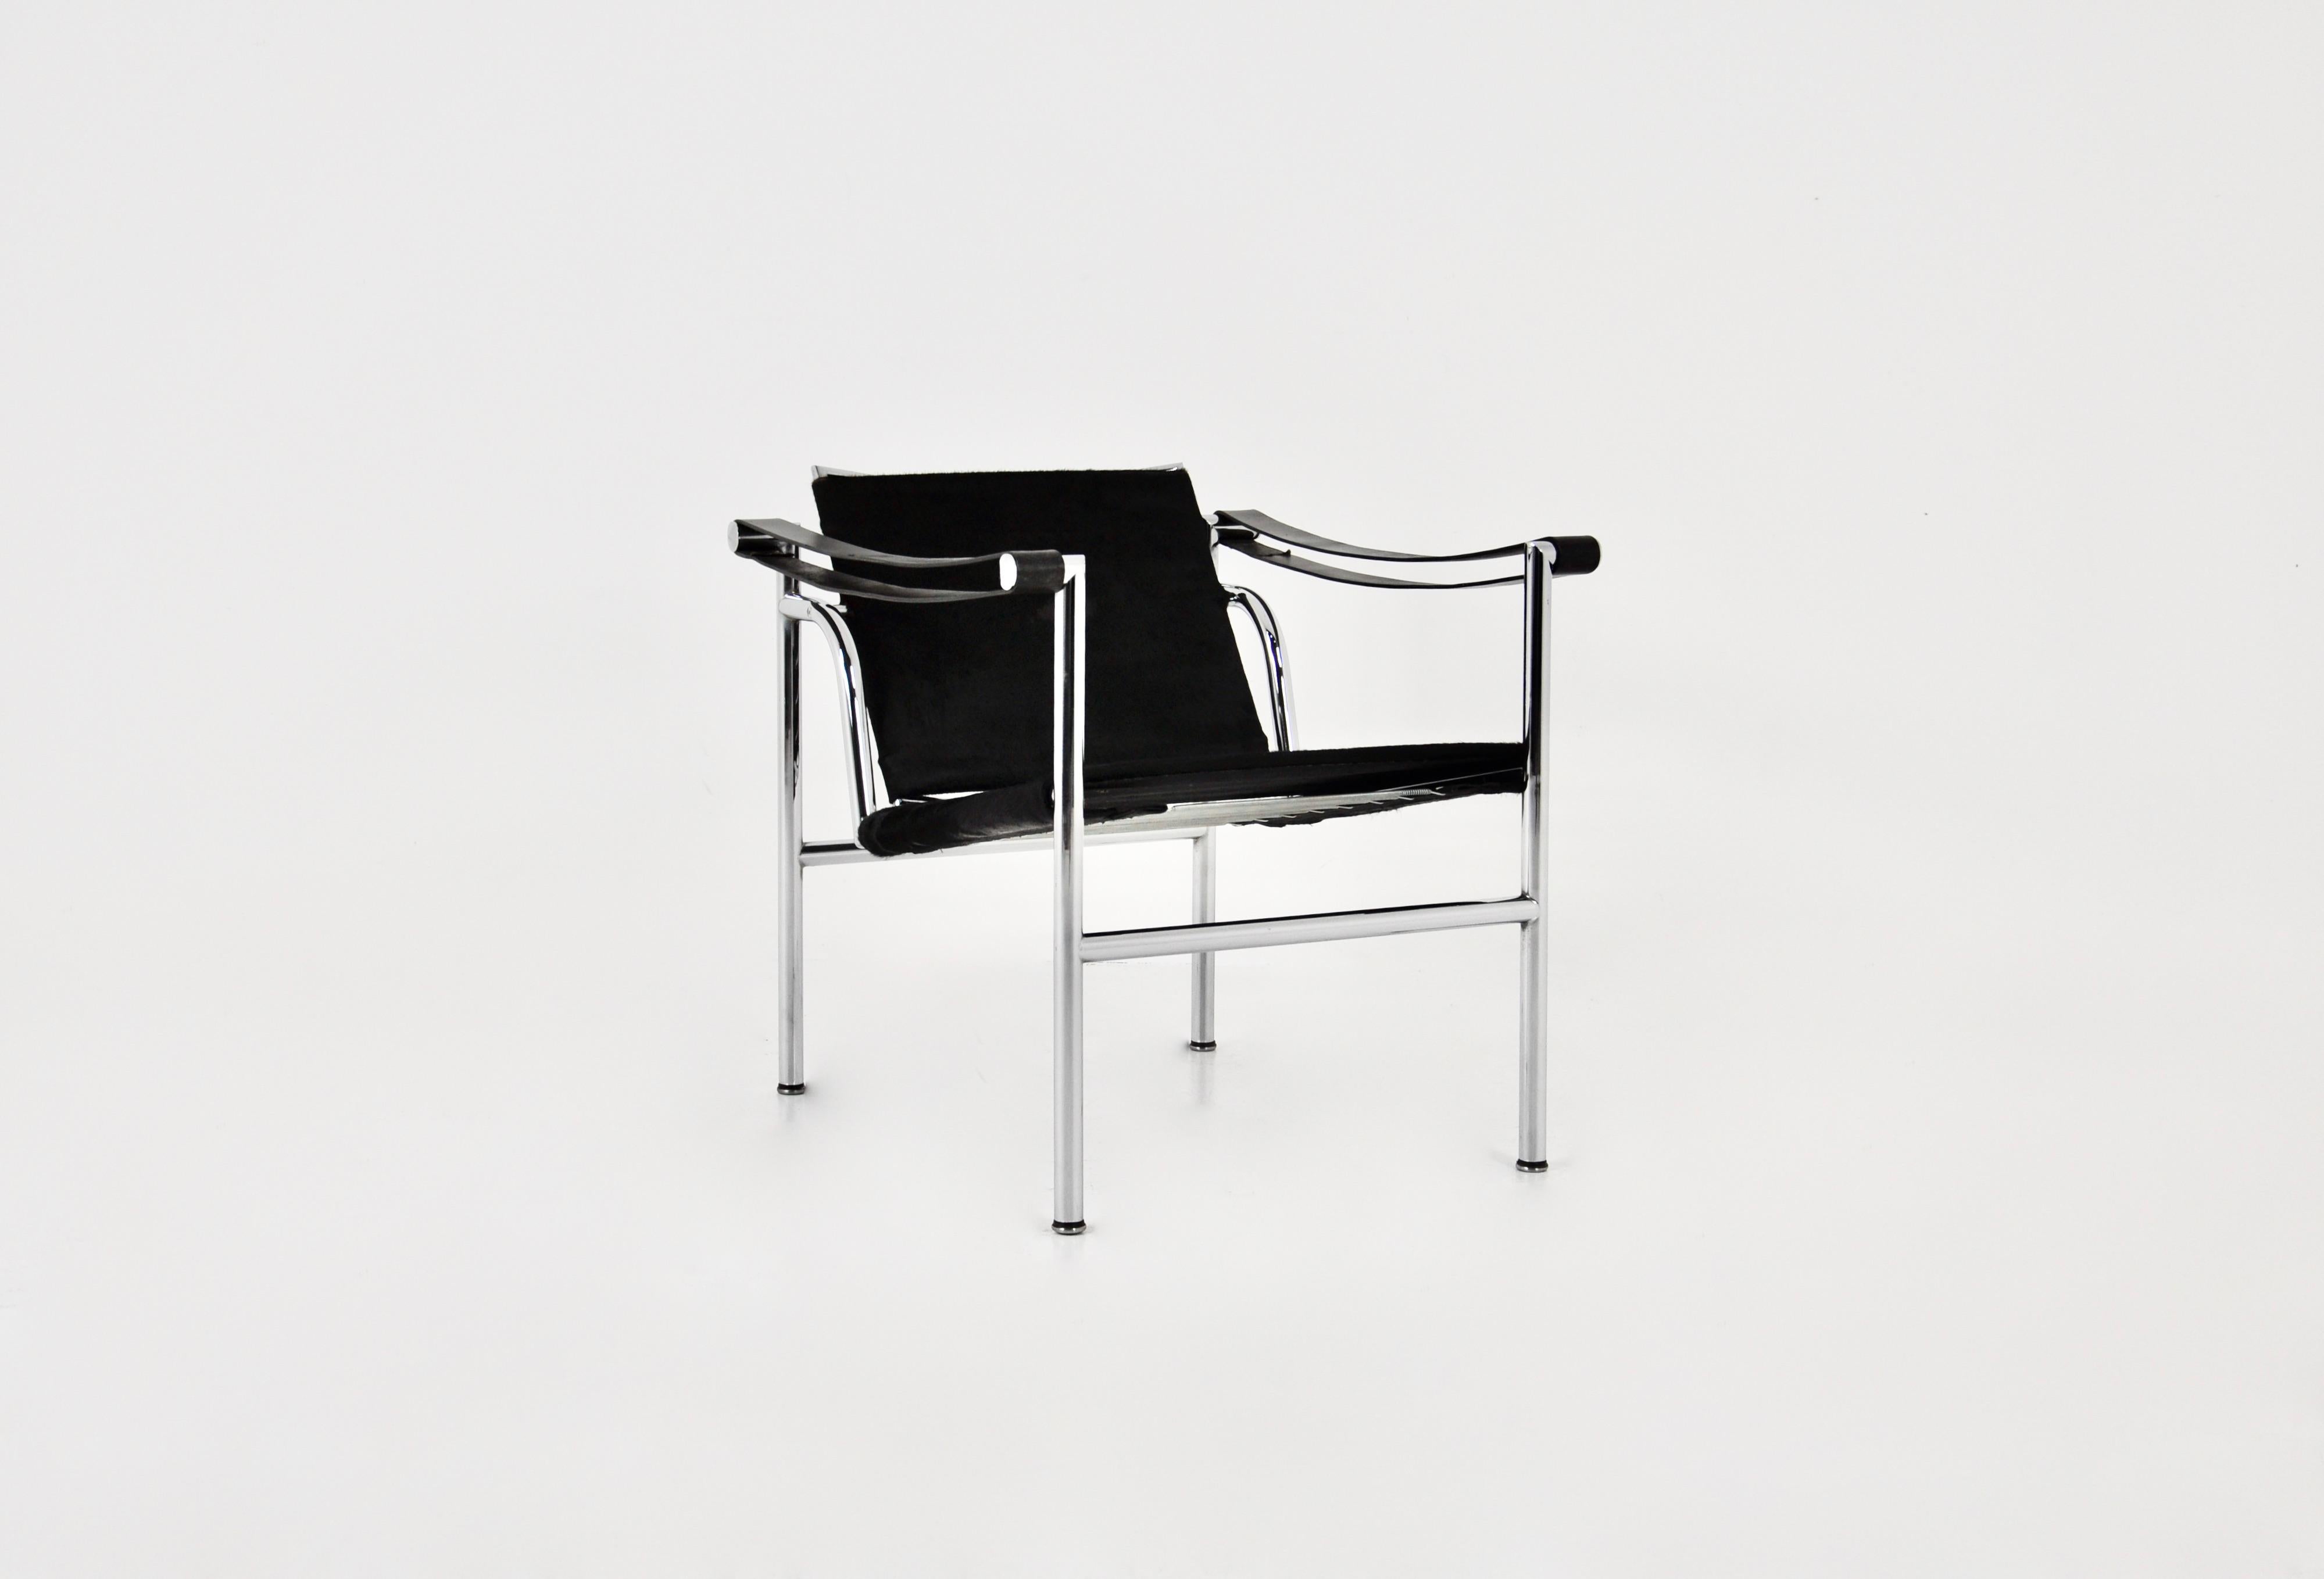 Chaise en peau de vache noire et structure métallique de Le Corbusier. Estampillé Le Corbusier. Hauteur du siège : 40 cm. Usure due au temps et à l'âge des chaises.